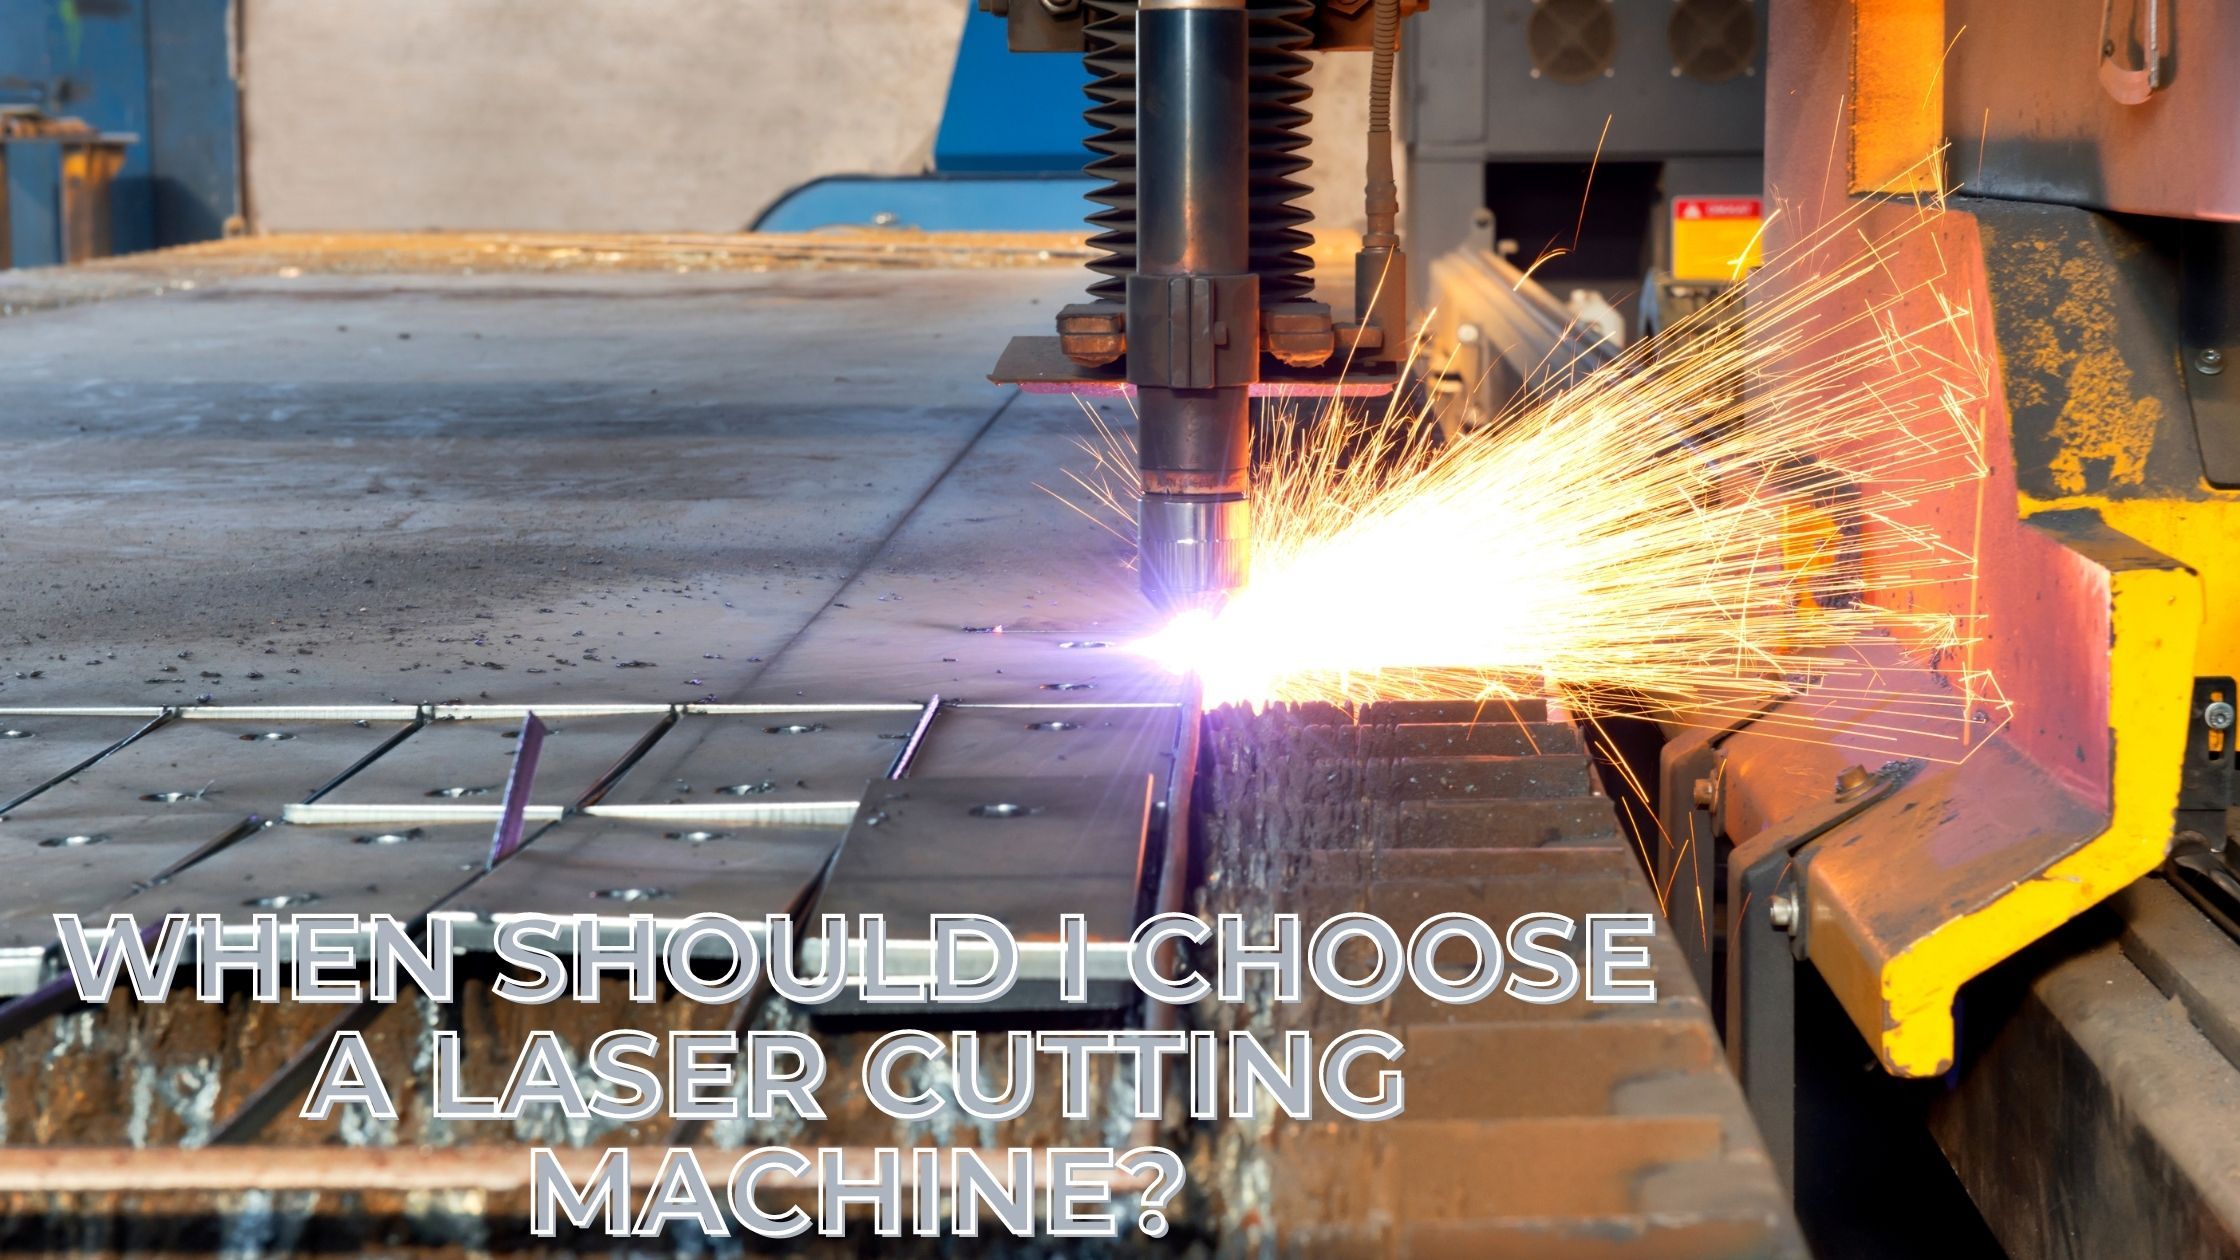 When should I choose a laser cutting machine?